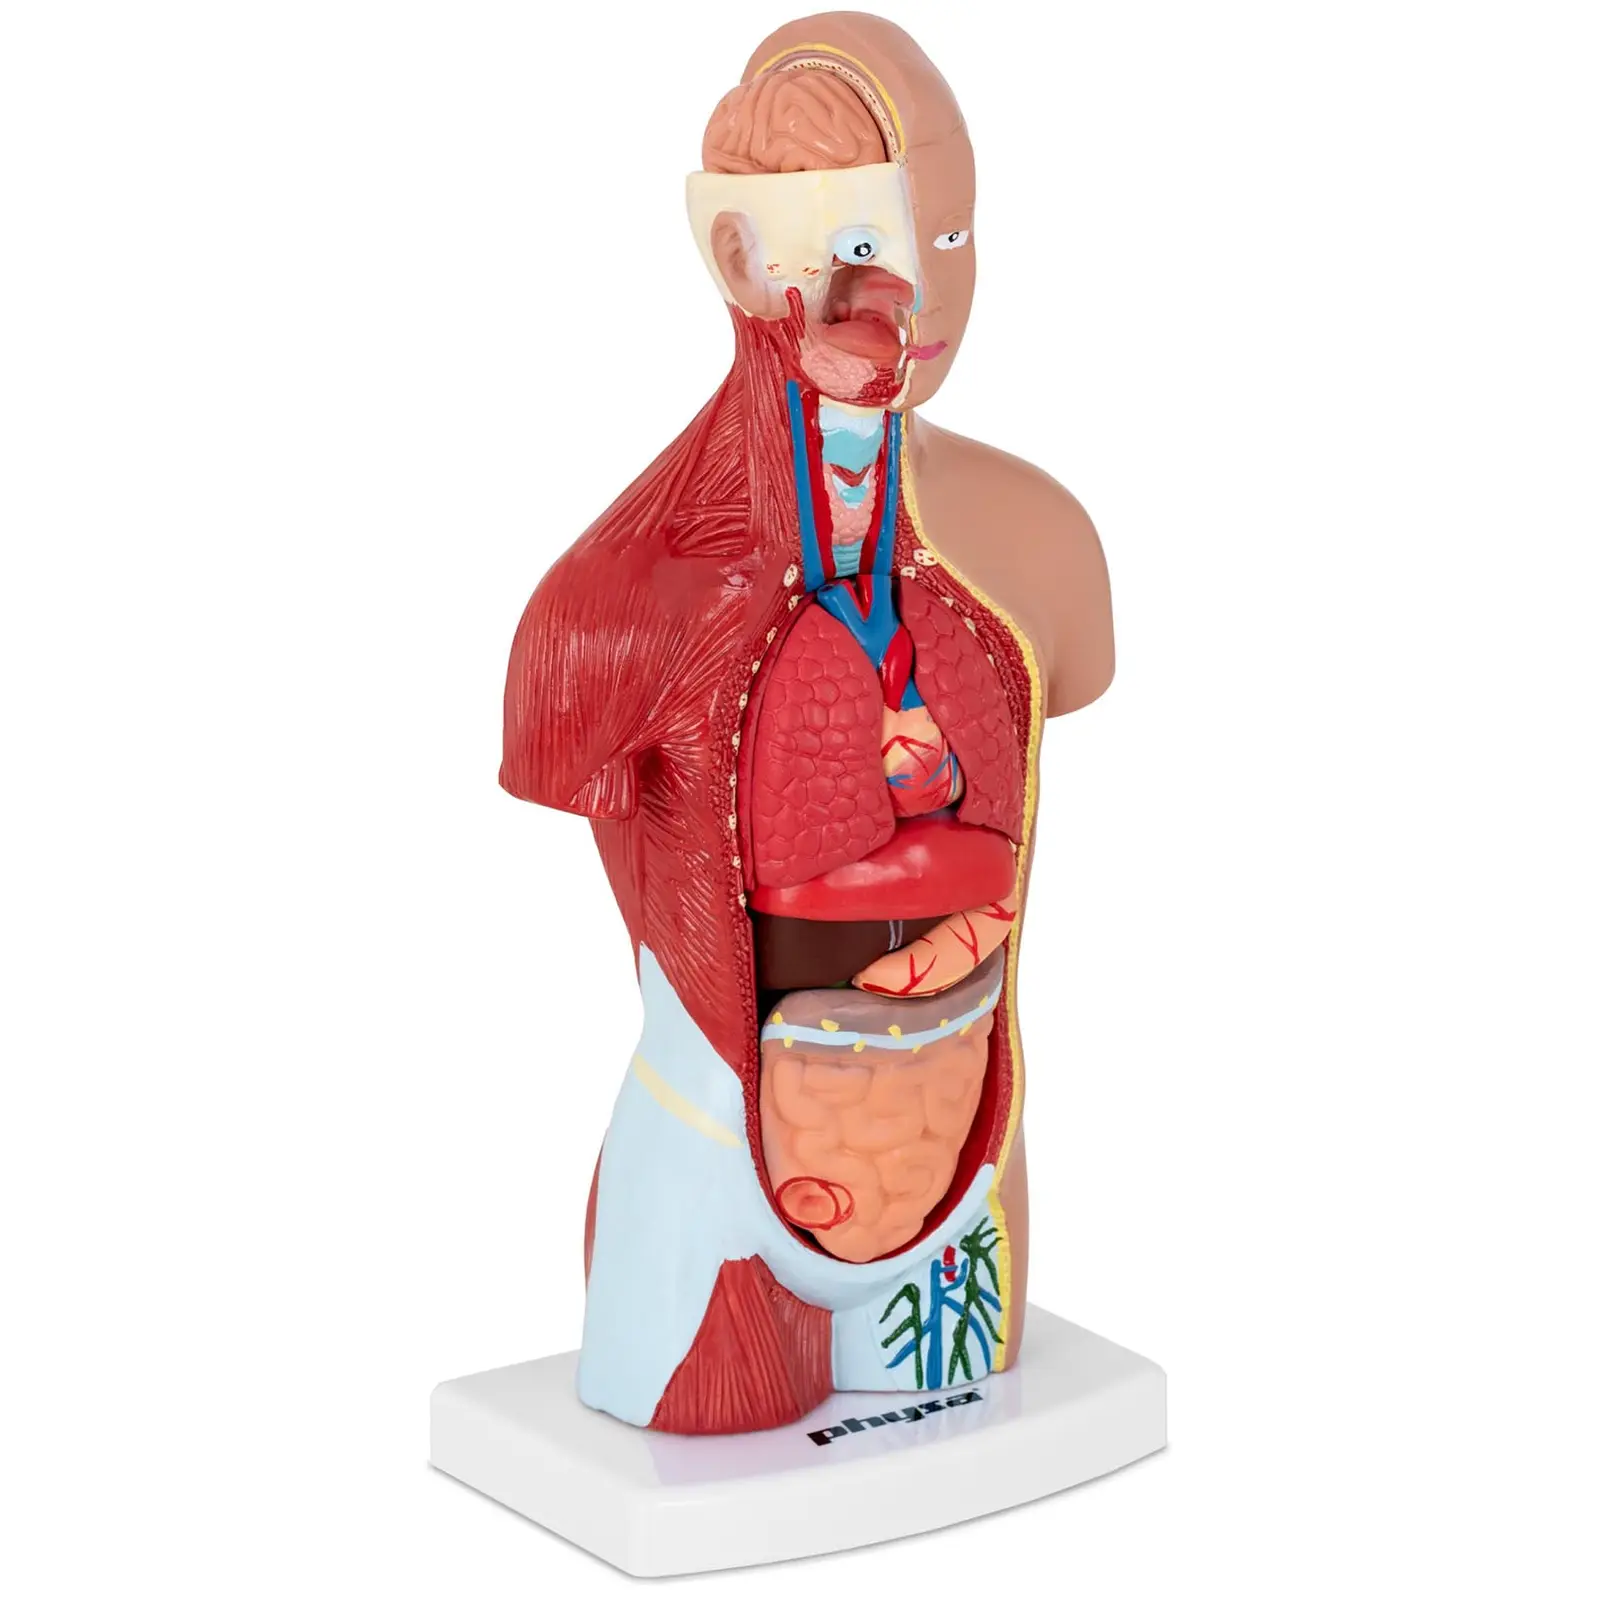 Torso - Anatomisk modell - Kan demonteras i 15 delar - Höjd 26 cm